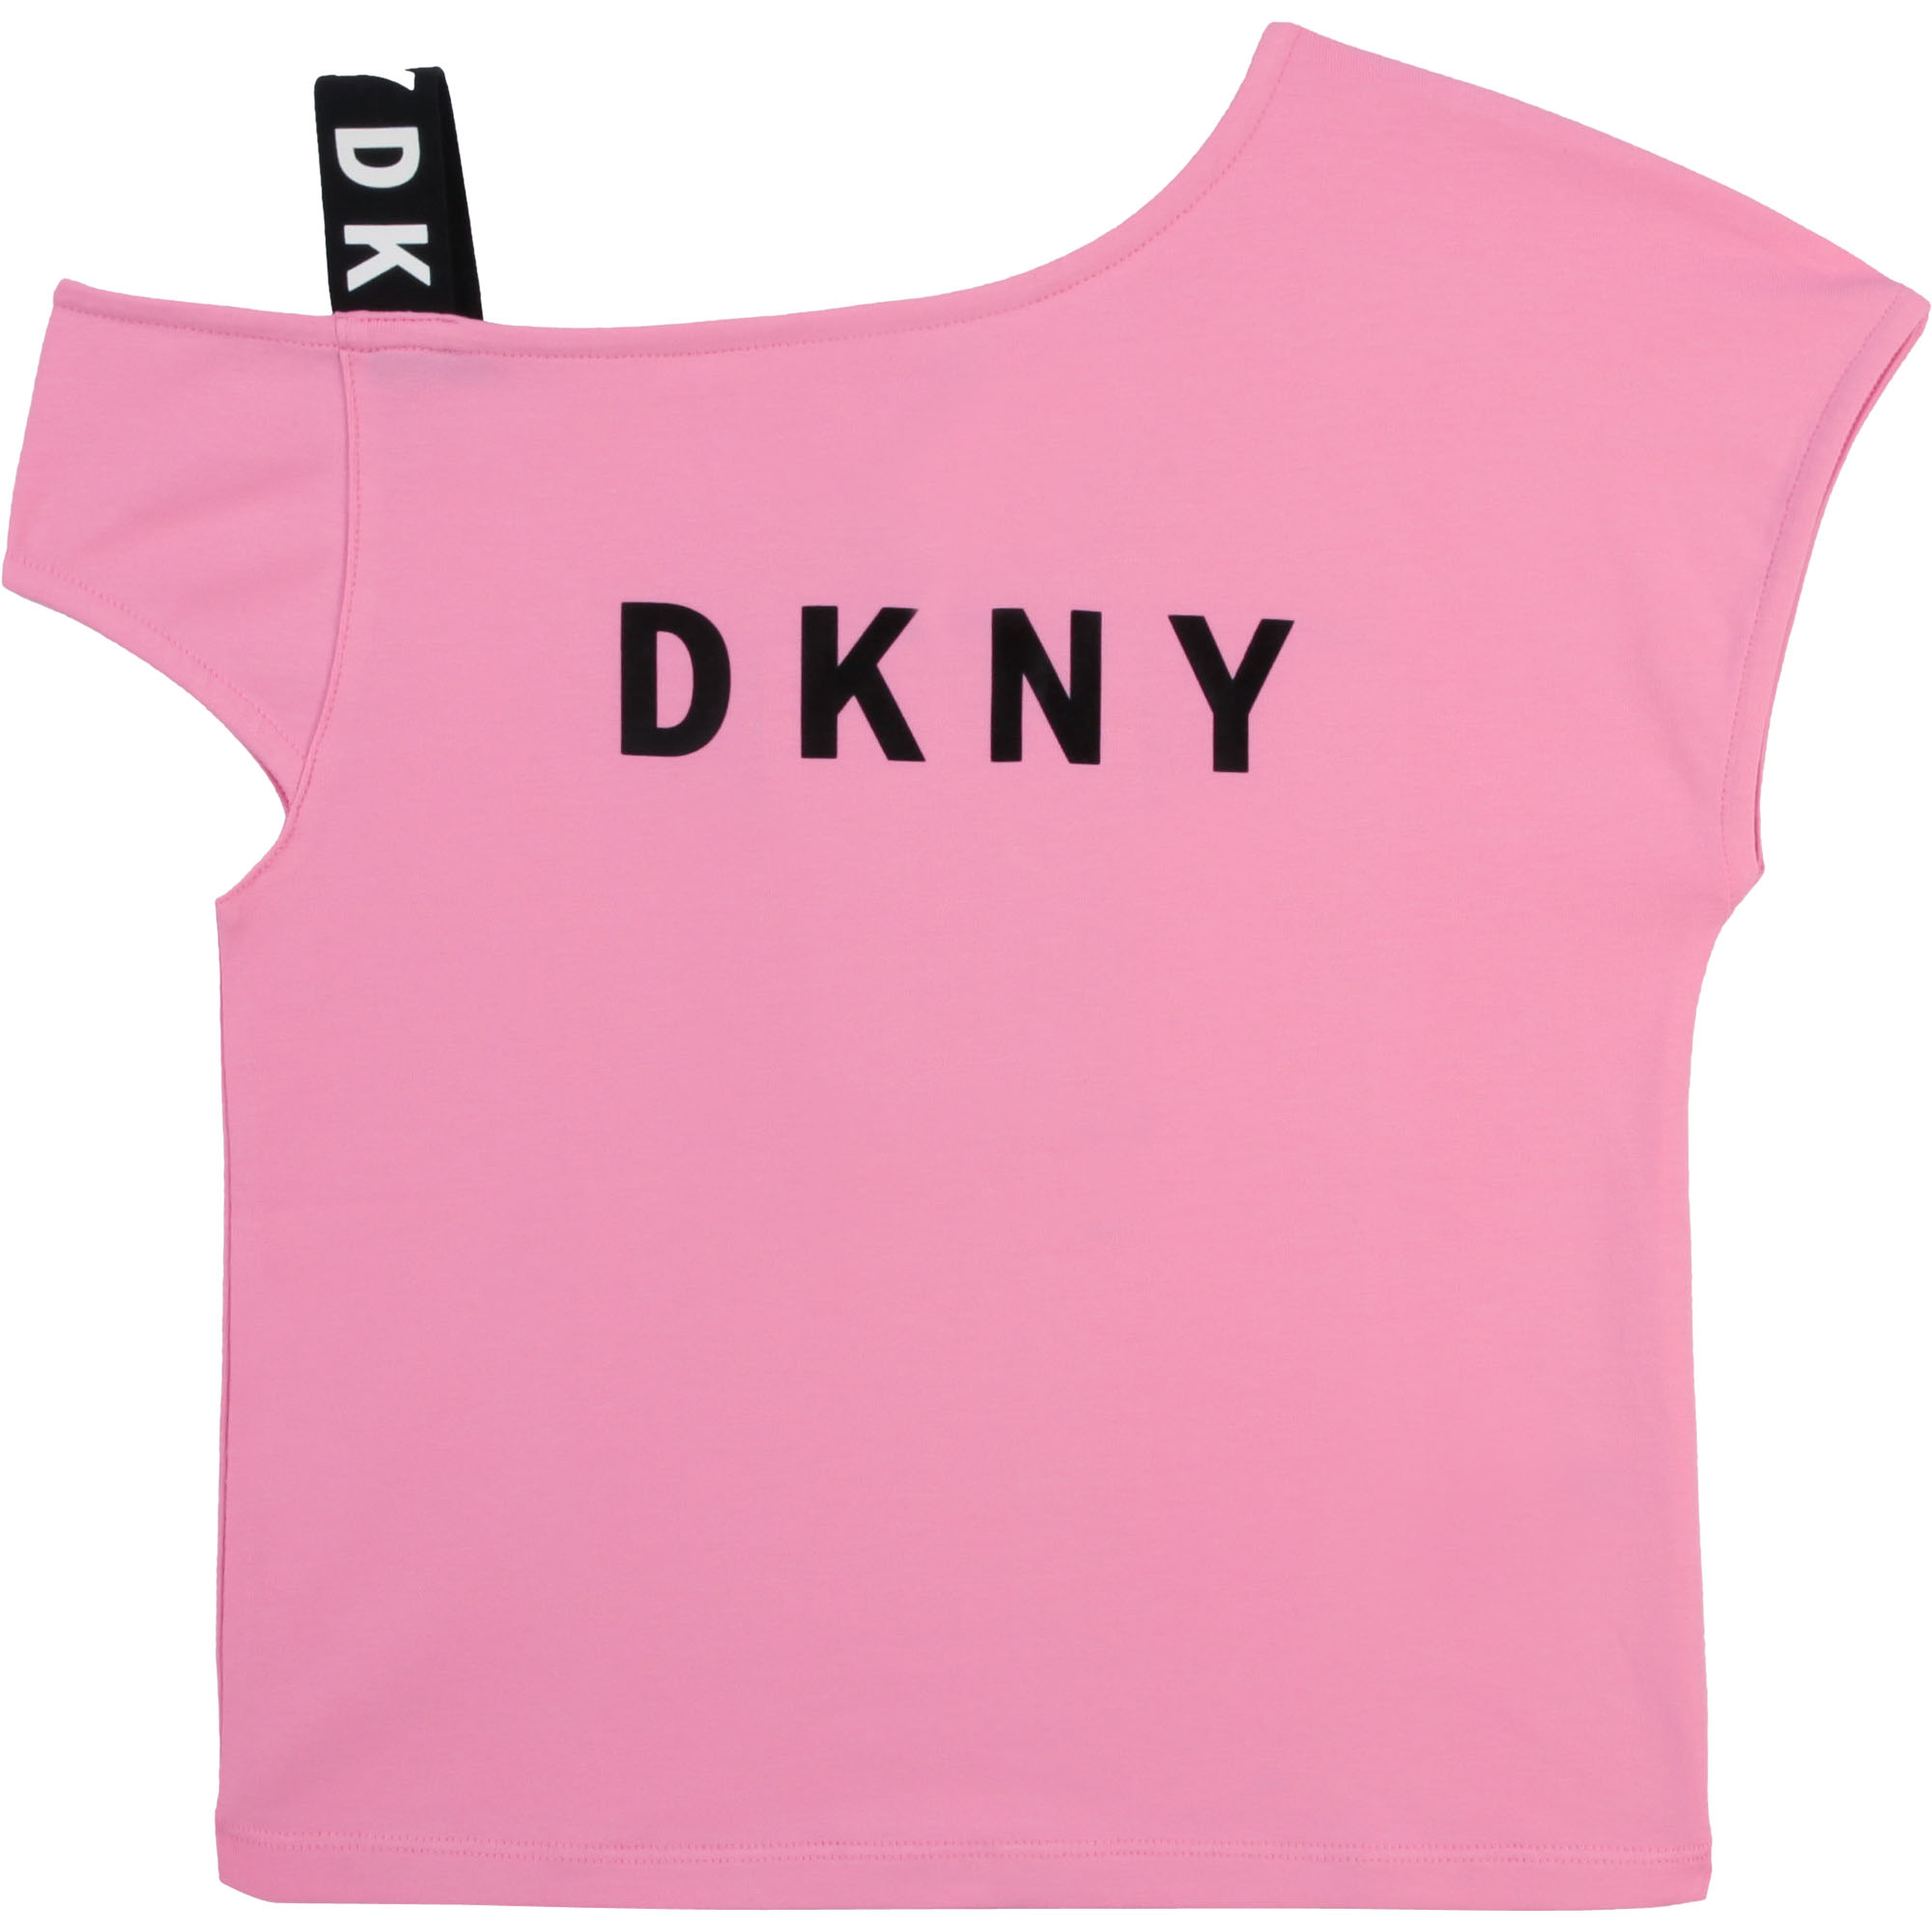 T-shirt spallina elasticizzata DKNY Per BAMBINA